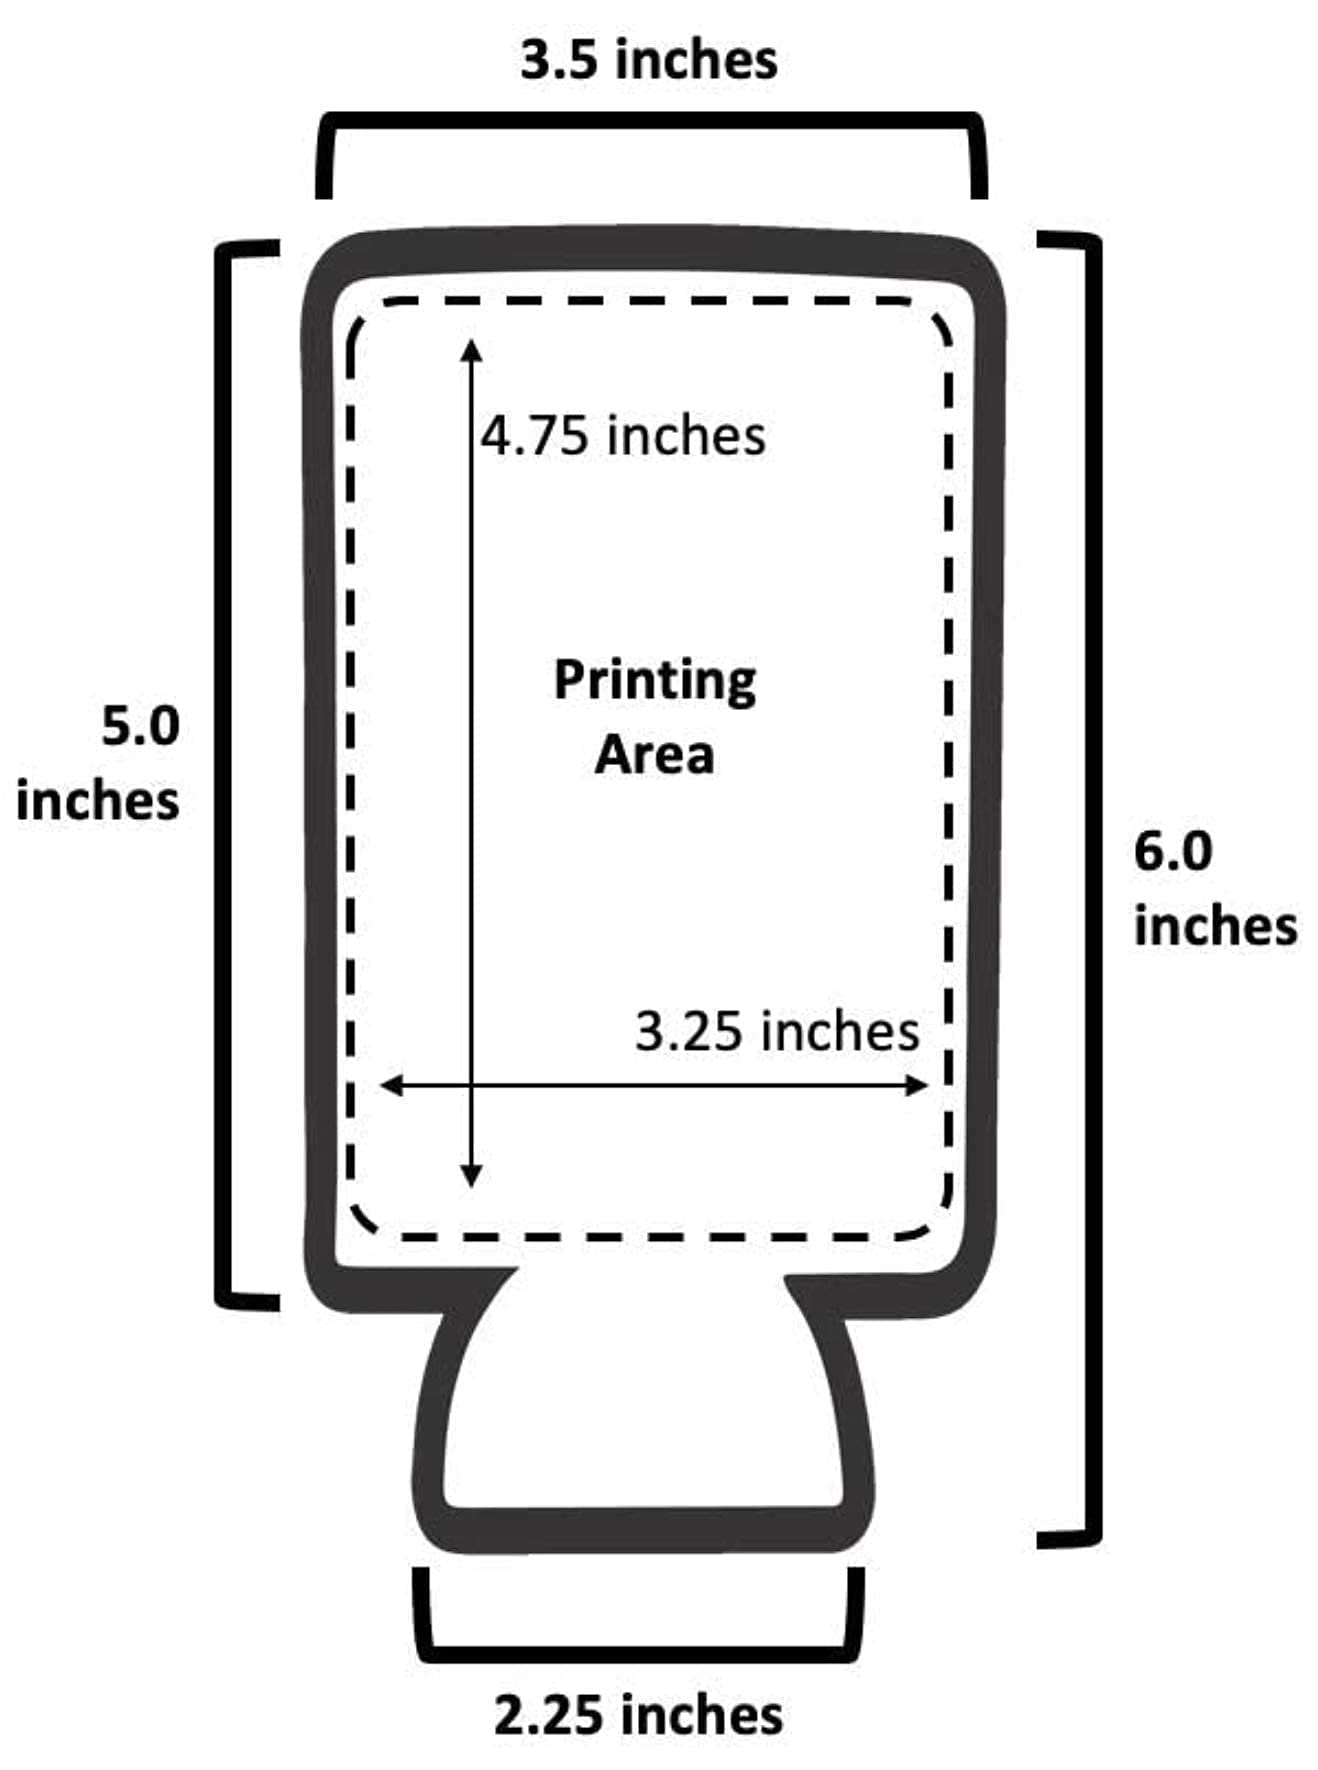 TahoeBay Can Cooler Bundle (50-Pack) Standard and Slim Sleeves (Multicolor)